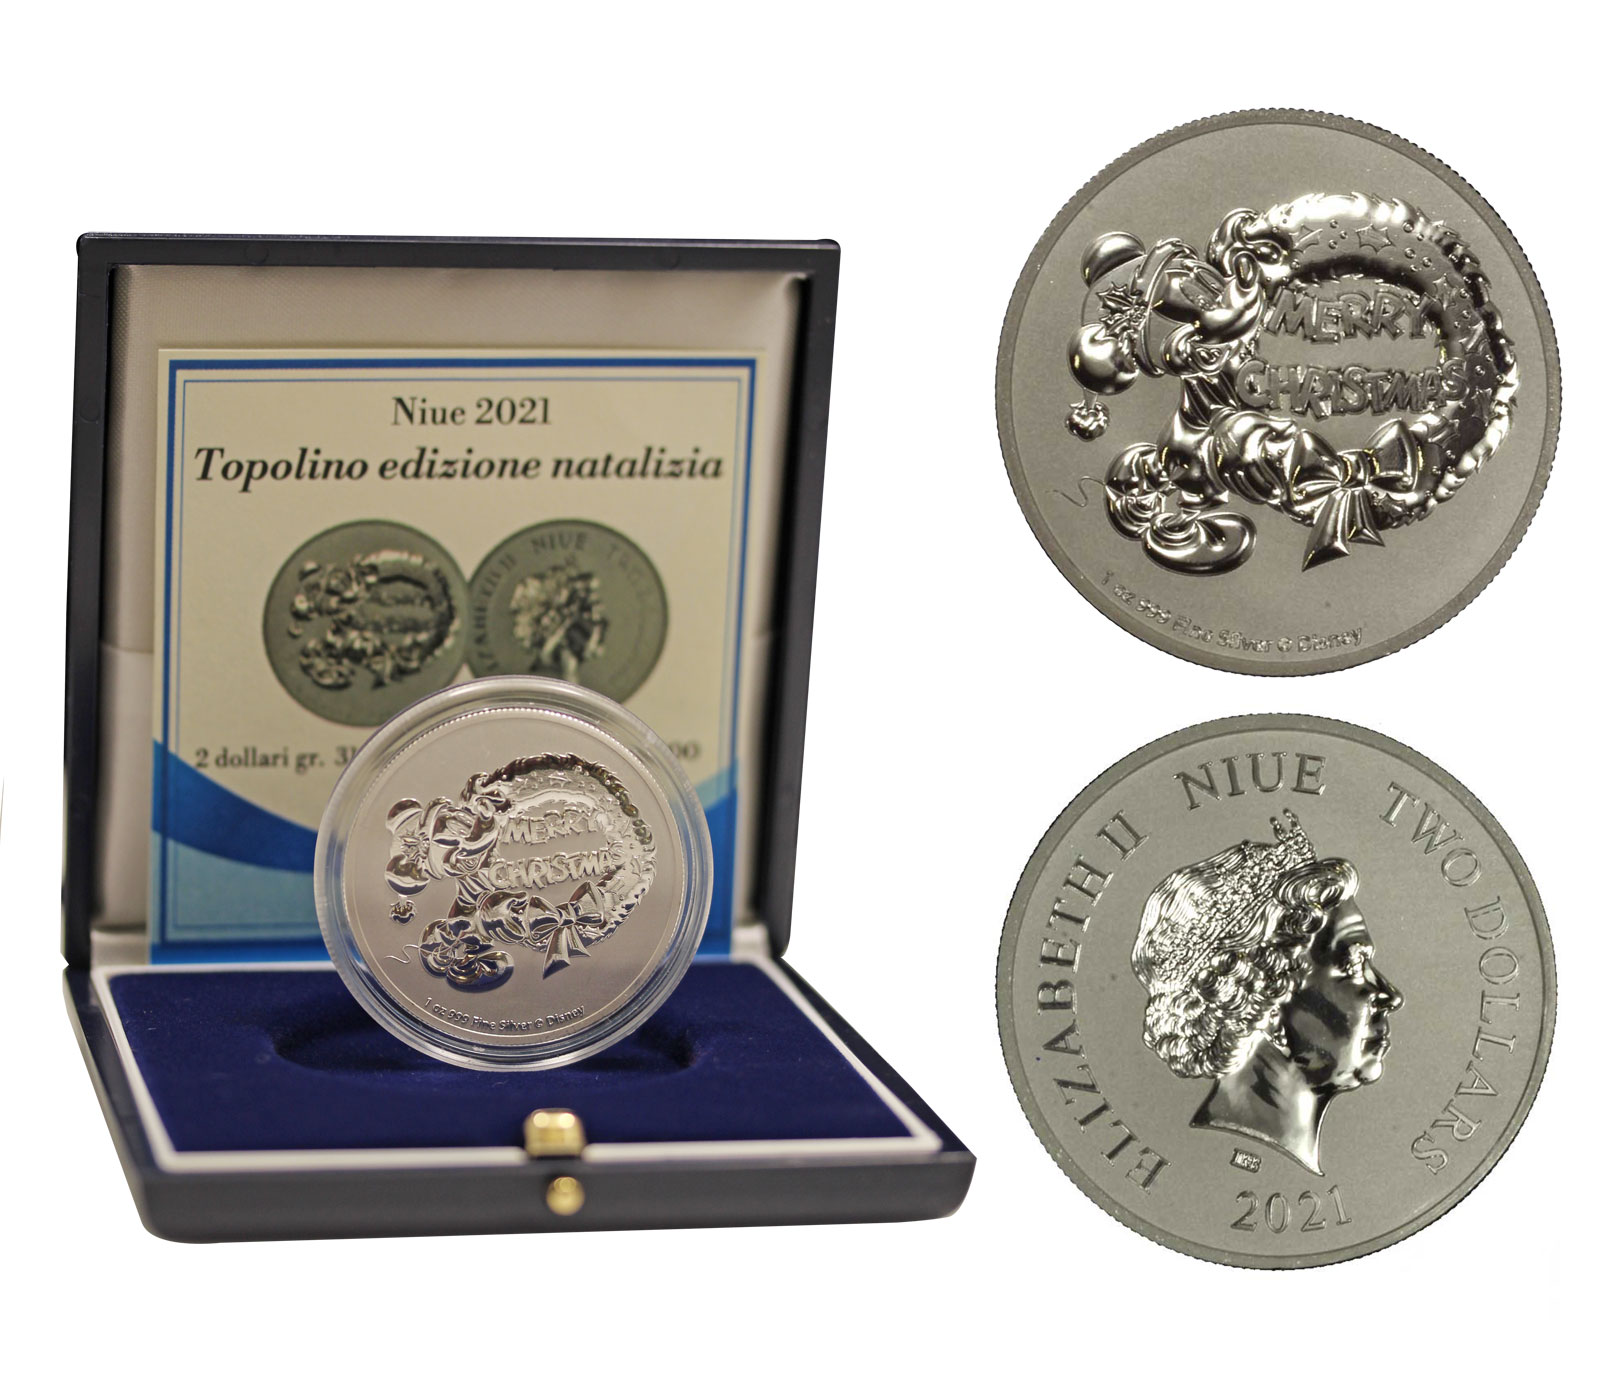 "Topolino Edizione Natalizia" - moneta da 2 dollari gr. 31,103 (1 oncia) in ag.999/000 in confezione con certificato